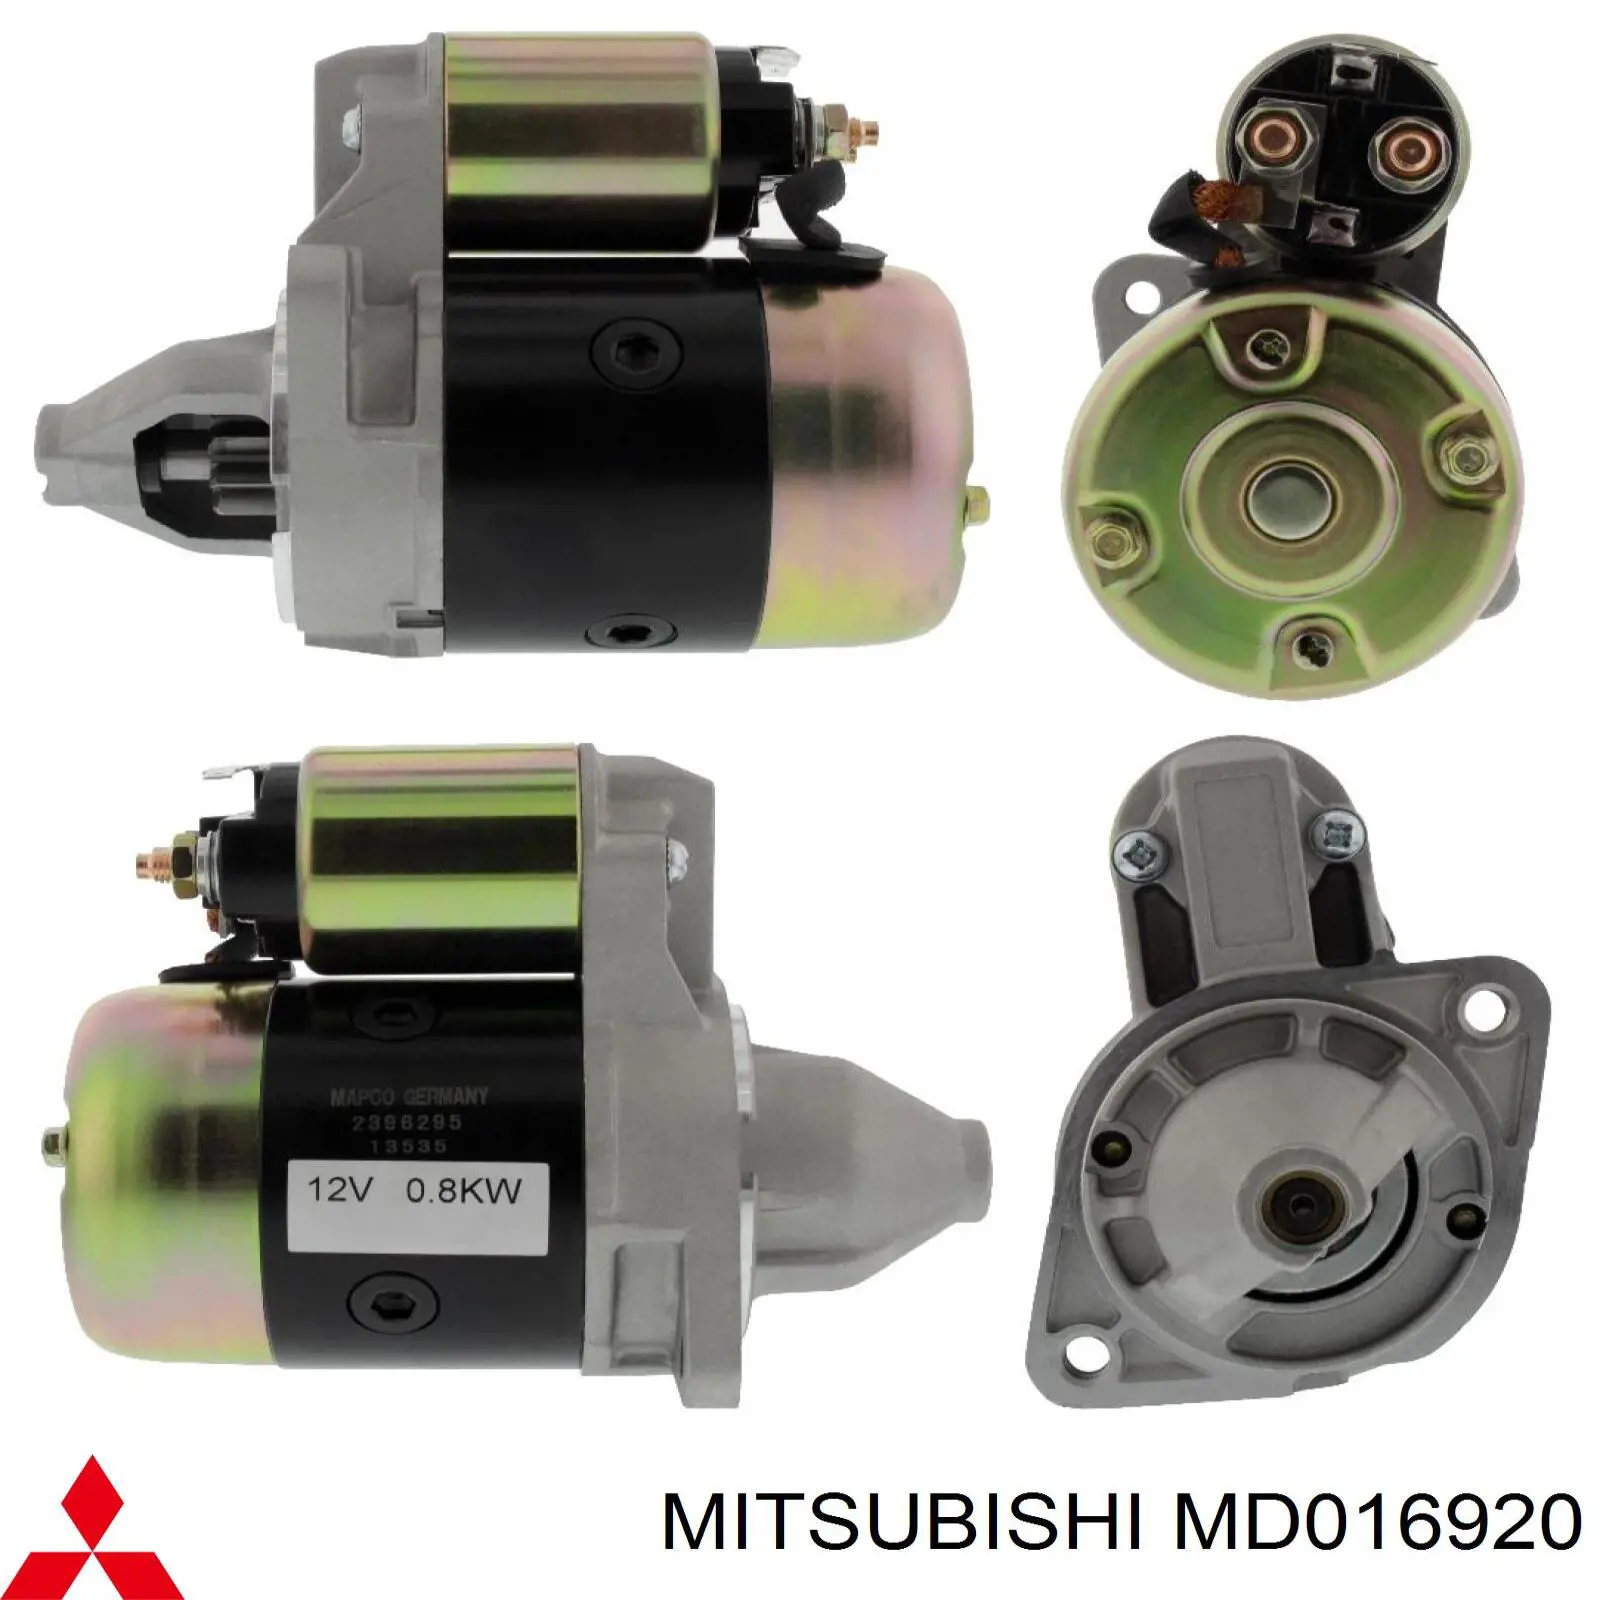 MD 016920 Mitsubishi motor de arranque